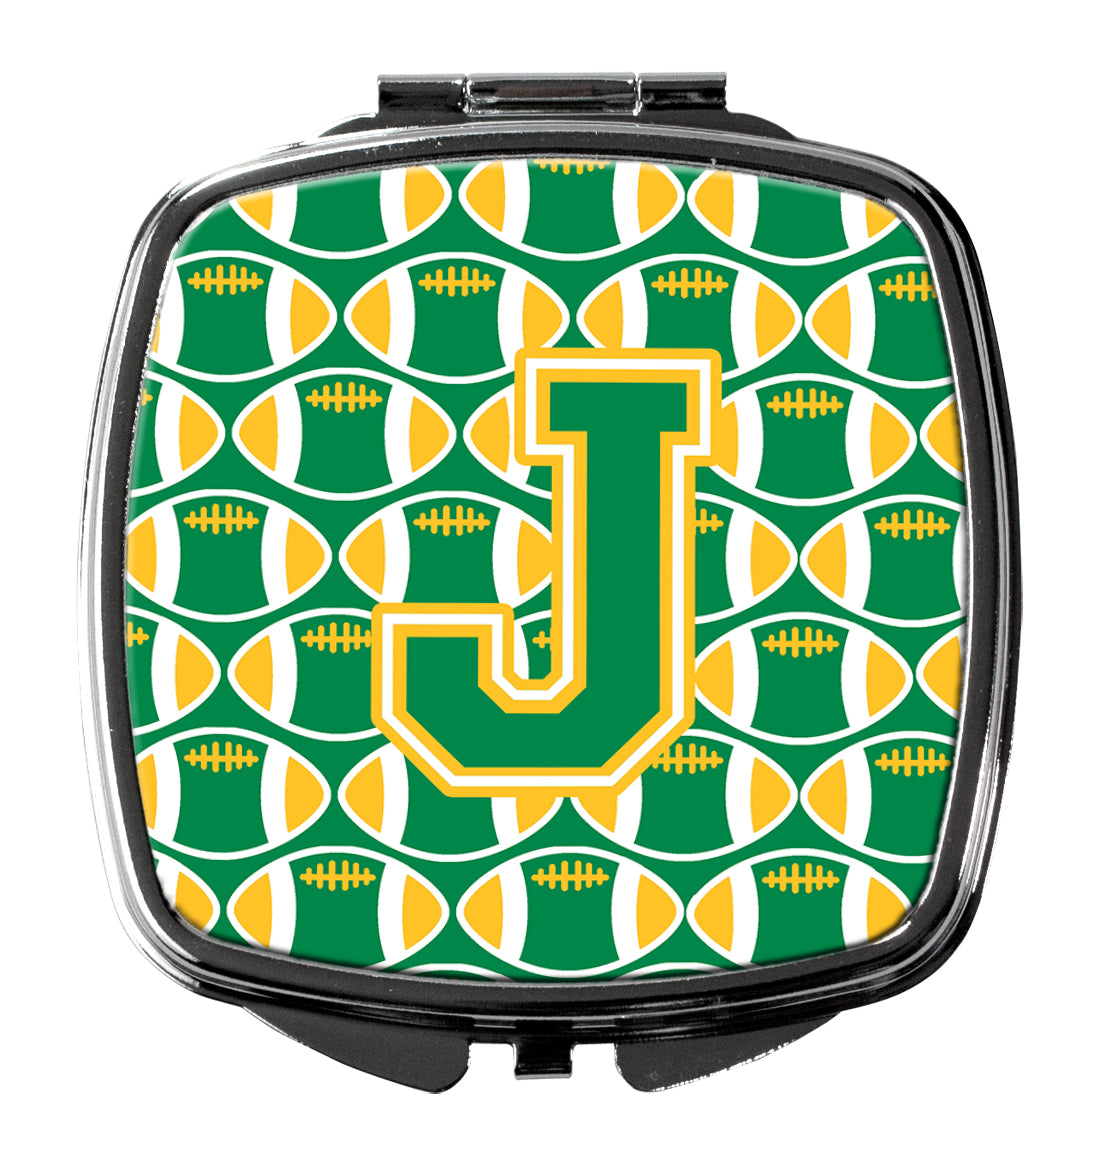 Miroir compact Lettre J Football vert et or CJ1069-JSCM